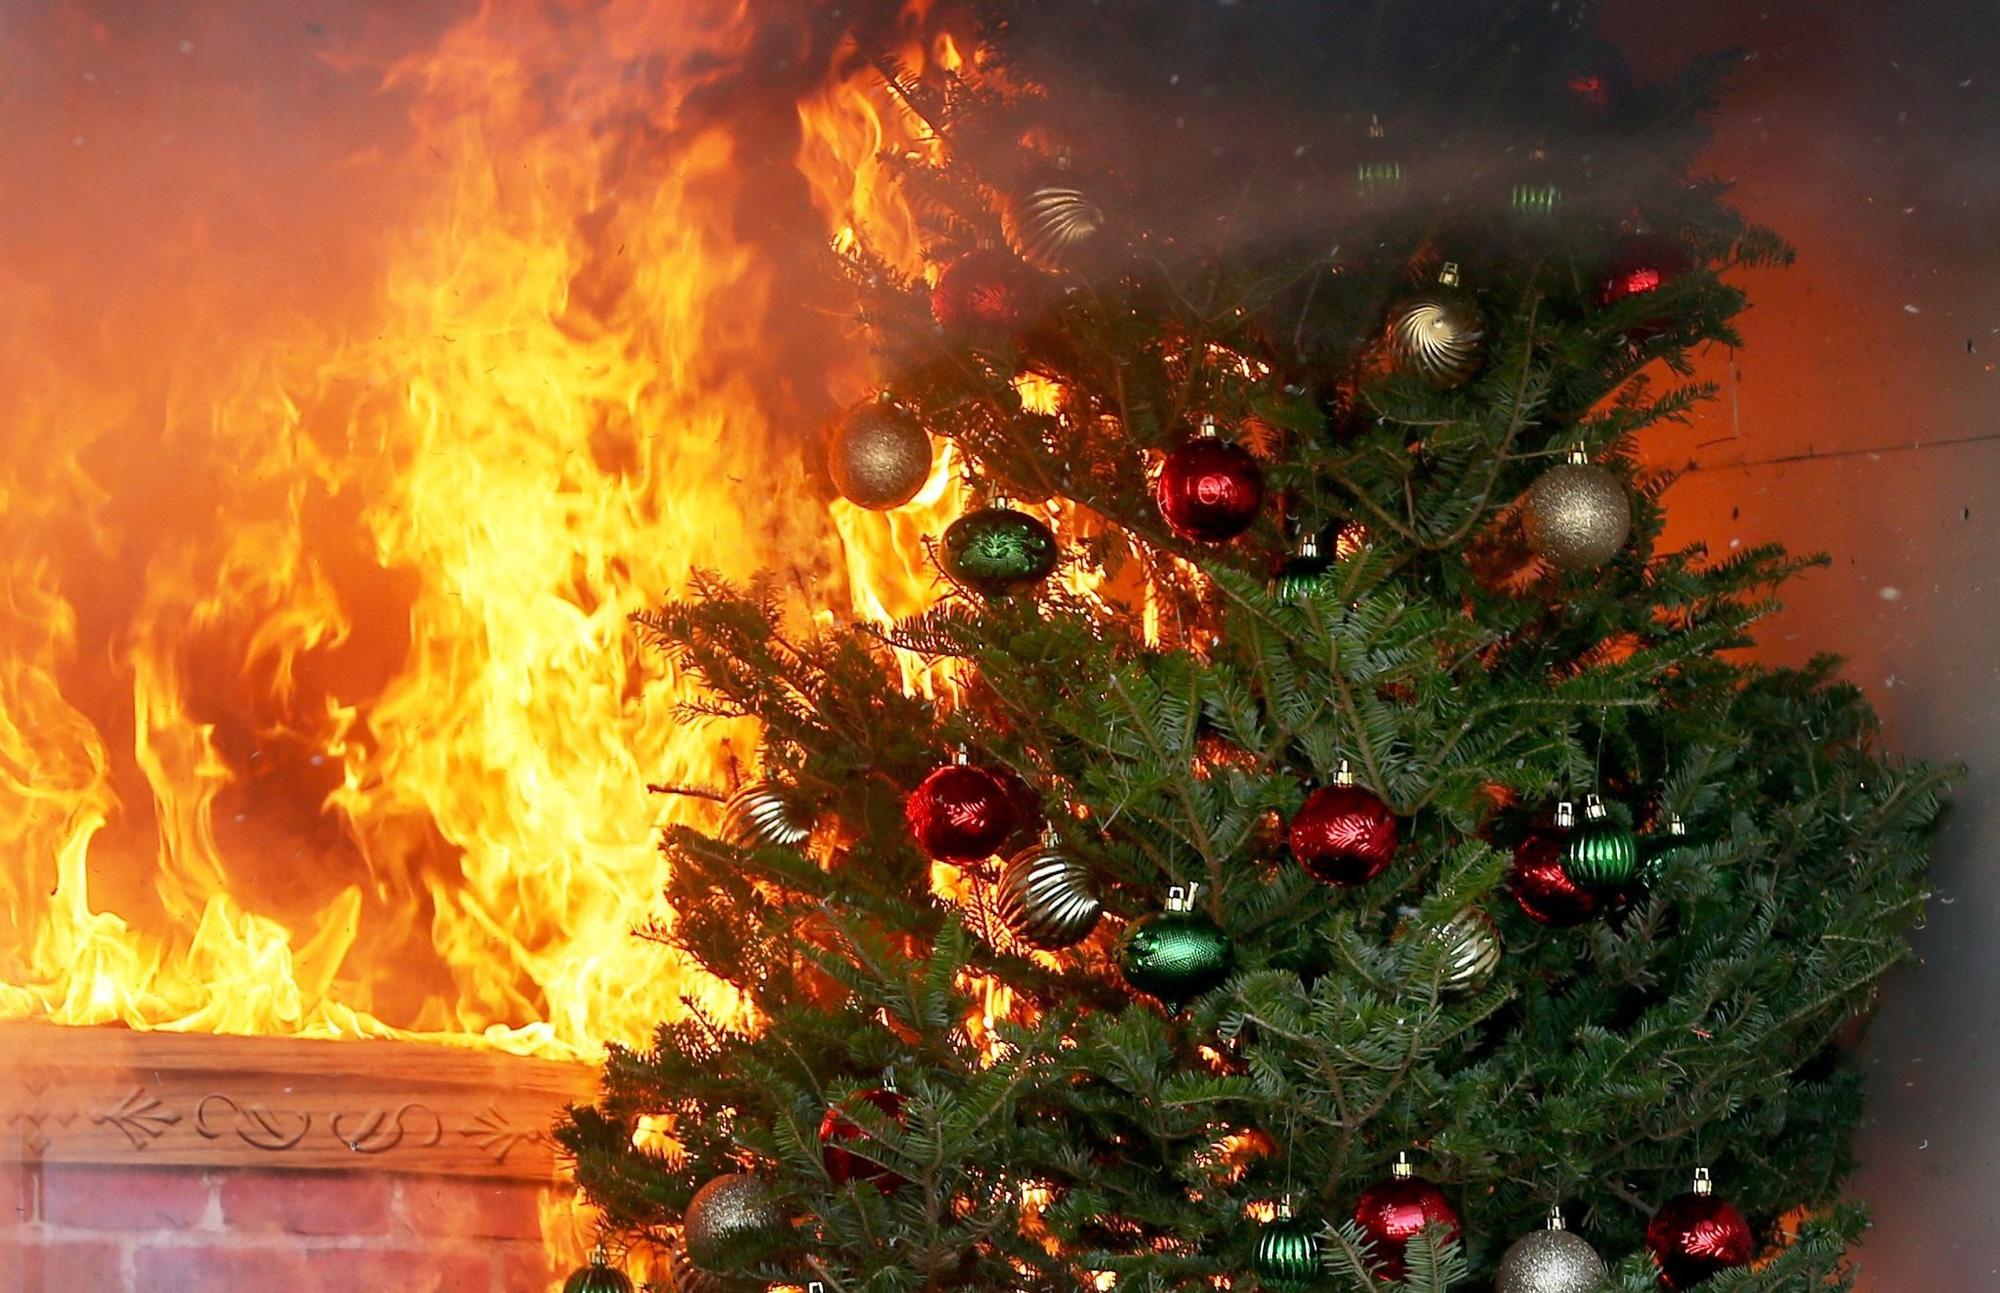 Kinh hoàng cảnh cây thông Noel bốc cháy ngùn ngụt trong nhà, rủi ro tiềm ẩn khi trang trí Giáng sinh bạn cần biết phương pháp phòng tránh - Ảnh 3.